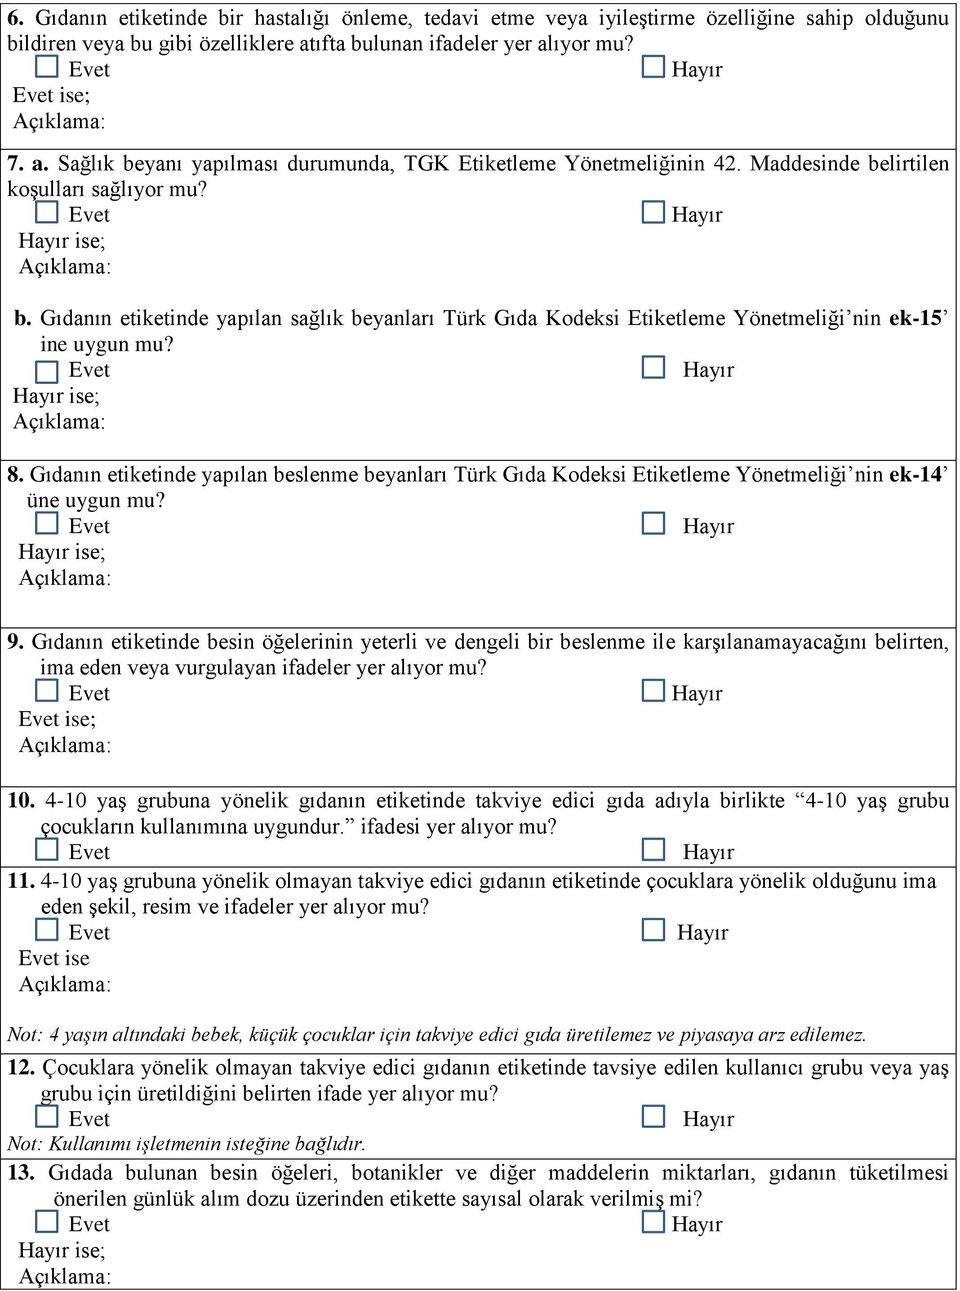 Gıdanın etiketinde yapılan sağlık beyanları Türk Gıda Kodeksi Etiketleme Yönetmeliği nin ek-15 ine uygun mu? ise; 8.